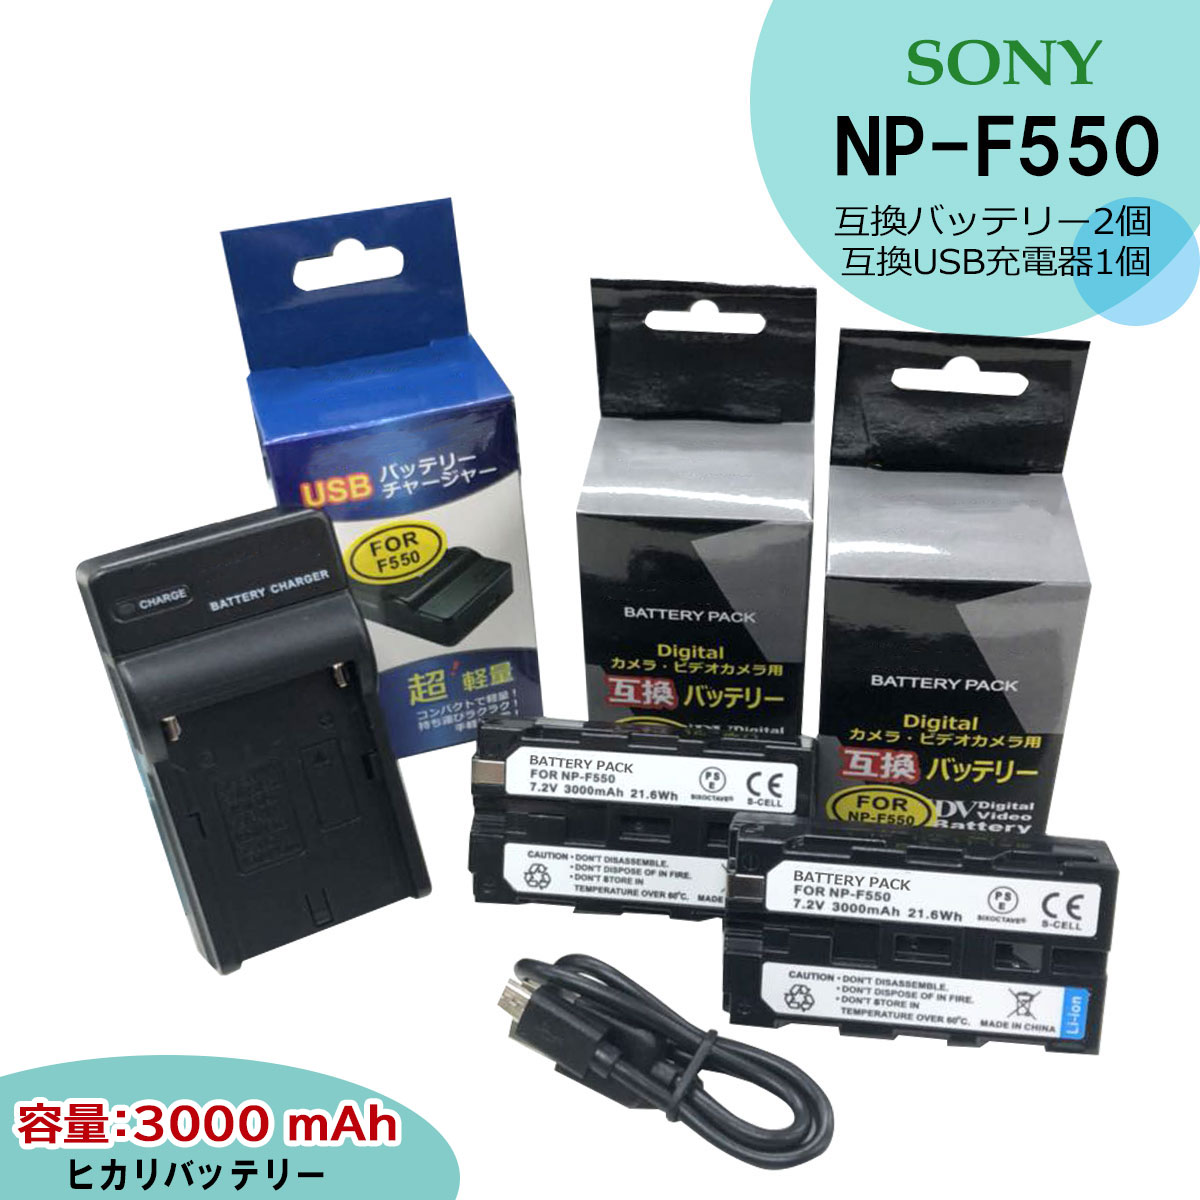 NP-F550 / NP-F530 / NP-F500 / NP-F570 等 商品内容 互換バッテリー　2個（LGセル） 互換充電器（USB充電式）　1個 規格 【バッテリー】 形式：リチウムイオン充電池（LG） 電圧：7.2V 容量：3000mAh 大きさ：幅38.4×高さ20.6×奥行70.8mm 質量：約105g 【充電器】 入力：micro USB DC5V±5% 出力：DC 8.4V±5% 500mA 対応機種 ※一部のみ記載しております。 詳しくは写真のpart1〜part3で表記させていただいております。 【HandyCam】Camcorder （SC) CCD-SC5　/ CCD-SC5E CCD-SC55 / CCD-SC55E CCD-SC6　/ CCD-SC65 CCD-SC7　/ CCD-SC7E CCD-SC8　/ CCD-SC8E CCD-SC9 (TR) CCD-TR1　 / CCD-TR11　 CCD-TR12 / CCD-TR18 CCD-TR18E / CCD-TR1E CCD-TR2 / CCD-TR1100E CCD-TR200 / CCD-TR205 CCD-TR215 / CCD-TR2200E CCD-TR2300 / CCD-TR2300E CCD-TR280PK　/ CCD-TR290PK CCD-TR3 / CCD-TR300　 CCD-TR3000　/ CCD-TR3000E　 CCD-TR3100E / CCD-TR311E　 CCD-TR315　 / CCD-TR315E　 CCD-TR317 / CCD-TR3200E　 CCD-TR3300　/ CCD-TR3300E CCD-TR411E　/ CCD-TR412E　 CCD-TR413　 / CCD-TR414　 CCD-TR415E　/ CCD-TR416　 CCD-TR417 / CCD-TR417E　 CCD-TR425E　/ CCD-TR427　 CCD-TR427E / CCD-TR500　 CCD-TR511E / CCD-TR512E　 CCD-TR515E　/ CCD-TR516　 CCD-TR516E　/ CCD-TR517　 CCD-TR555 / CCD-TR57 CCD-TR610 / CCD-TR617 CCD-TR617E / CCD-TR618 CCD-TR618E / CCD-TR640E CCD-TR67 / CCD-TR710 CCD-TR713E / CCD-TR716 CCD-TR717 / CCD-TR717E CCD-TR718 / CCD-TR718E CCD-TR728 / CCD-TR728E CCD-TR730E / CCD-TR76 CCD-TR760E / CCD-TR810E CCD-TR818 / CCD-TR840E CCD-TR845E / CCD-TR87 CCD-TR910 / CCD-TR913E CCD-TR917 / CCD-TR918 CCD-TR918E / CCD-TR930 CCD-TR940 / CCD-TR950E CCD-TR97 / CCD-TRT97 DCR-TR7000　 / DCR-TR7000E DCR-TR7100E / DCR-TR8000 DCR-TR8000E / DCR-TR8100 DCR-TR8100E (TRV) CCD-TRV101 / CCD-TRV119 CCD-TRV15 / CCD-TRV16 CCD-TRV16E / CCD-TRV201 CCD-TRV215 / CCD-TRV25 CCD-TRV26E / CCD-TRV27E CCD-TRV3000 / CCD-TRV315 CCD-TRV35 / CCD-TRV36 CCD-TRV36E / CCD-TRV37 CCD-TRV37E / CCD-TRV4 CCD-TRV41 / CCD-TRV43 CCD-TRV45 / CCD-TRV46 CCD-TRV46E / CCD-TRV47 CCD-TRV47E / CCD-TRV48 CCD-TRV48E / CCD-TRV49 CCD-TRV51 / CCD-TRV517 CCD-TRV54 / CCD-TRV56E CCD-TRV57 / CCD-TRV57E CCD-TRV58 / CCD-TRV59 CCD-TRV59E / CCD-TRV615 CCD-TRV62 / CCD-TRV63 CCD-TRV65 / CCD-TRV66 CCD-TRV66E / CCD-TRV66K CCD-TRV67 / CCD-TRV67E CCD-TRV68 / CCD-TRV71 CCD-TRV715 / CCD-TRV716 CCD-TRV72 / CCD-TRV720 CCD-TRV75 / CCD-TRV78 CCD-TRV78E / CCD-TRV80PK CCD-TRV81 / CCD-TRV815 CCD-TRV82 / CCD-TRV85 CCD-TRV85K / CCD-TRV86PK CCD-TRV87 / CCD-TRV87E CCD-TRV88 / CCD-TRV91 CCD-TRV92 / CCD-TRV93 CCD-TRV930 / CCD-TRV940 CCD-TRV94E / CCD-TRV95 CCD-TRV95E / CCD-TRV95K CCD-TRV98 / CCD-TRV98E CCD-TRV99 【デジタルビデオカメラ】 DCR-SC100 【ビデオカメラ】 DCR-TRV103 / DCR-TRV110 DCR-TRV110E / DCR-TRV110K DCR-TRV120 / DCR-TRV120E DCR-TRV125 / DCR-TRV125E DCR-TRV130 / DCR-TRV130E DCR-TRV203 / DCR-TRV210 DCR-TRV210E / DCR-TRV220K DCR-TRV310 / DCR-TRV310E DCR-TRV310K / DCR-TRV315 DCR-TRV320 / DCR-TRV320E DCR-TRV420 / DCR-TRV420E DCR-TRV49E / DCR-TRV5 DCR-TRV510 / DCR-TRV520 DCR-TRV520E / DCR-TRV525 DCR-TRV58E / DCR-TRV620 DCR-TRV620E / DCR-TRV620K DCR-TRV7 / DCR-TRV720 DCR-TRV720E / DCR-TRV735K DCR-TRV820 / DCR-TRV820E DCR-TRV820K / DCR-TRV9 DCR-TRV900 / DCR-TRV900E DCR-TRV92 / DCR-TRV935K (VT) DCR-TV900 / DCR-TV900E (VX) DCR-VX2000　　/ DCR-VX2000E DCR-VX2001　　/　DCR-VX2100 DCR-VX2100E 　/　DCR-VX9000 (CD) DSC-CD250 / DSC-CD400 (D) DSC-D700 / DSC-D770 【DVCAM カムコーダー】 DSR-DU1(Video Disk Unit) 【デジタルマビカ】 MVC-CD1000　/ 　MVC-FD100 MVC-FD200　　/ 　MVC-FD5 MVC-FD51　　/ 　MVC-FD7 MVC-FD71　　/ 　MVC-FD73 MVC-FD73K　　/ 　MVC-FD75 MVC-FD81　　/ 　MVC-FD83 MVC-FD83K　 / 　MVC-FD85 MVC-FD87　　 / 　MVC-FD88 MVC-FD88K　 / 　MVC-FD90 MVC-FD91　　/ 　MVC-FD92 MVC-FD95　 / 　MVC-FD97 MVC-FDR1 　/ 　MVC-FDR1E MVC-FDR3　 / 　MVC-FDR3E 【互換バッテリー】 NP-F530 / NP-F570 / NP-F500 / NP-F550 FUTABA: LT2F2200 【対応充電器】 NP-F550 / AC-V700 / BC-V615 仕様 【バッテリー】 ●分単位でのバッテリー残量表示が可能な“インフォリチウム”機能搭載 ●認証：PSEマーク（電気用品安全法）取得製品。 ●認証：CEマーク（欧州連合安全規制）取得製品。 ●残量表示可能 ●純正＆互換の充電器でも充電可能。 【充電器】 ●充電中は赤ランプ、充電完了後は緑ランプでお知らせ。 ●USB端子がある機器に接続し、どこでも充電可能 ●超軽量で携帯に大変便利。 ●認証：CEマーク（欧州連合安全規制）取得製品。 ●純正＆互換バッテリーも充電可能。 ☆本製品には過電流保護、過充電防止、過放電防止の保護回路が内蔵。 保証：6ヶ月（PL保険（生産物賠償責任保険）加入済み。 ご購入日より6ヶ月の安心保証付き！ 届出事業者名：SIXOCTAVE PSマークの種類：PSE